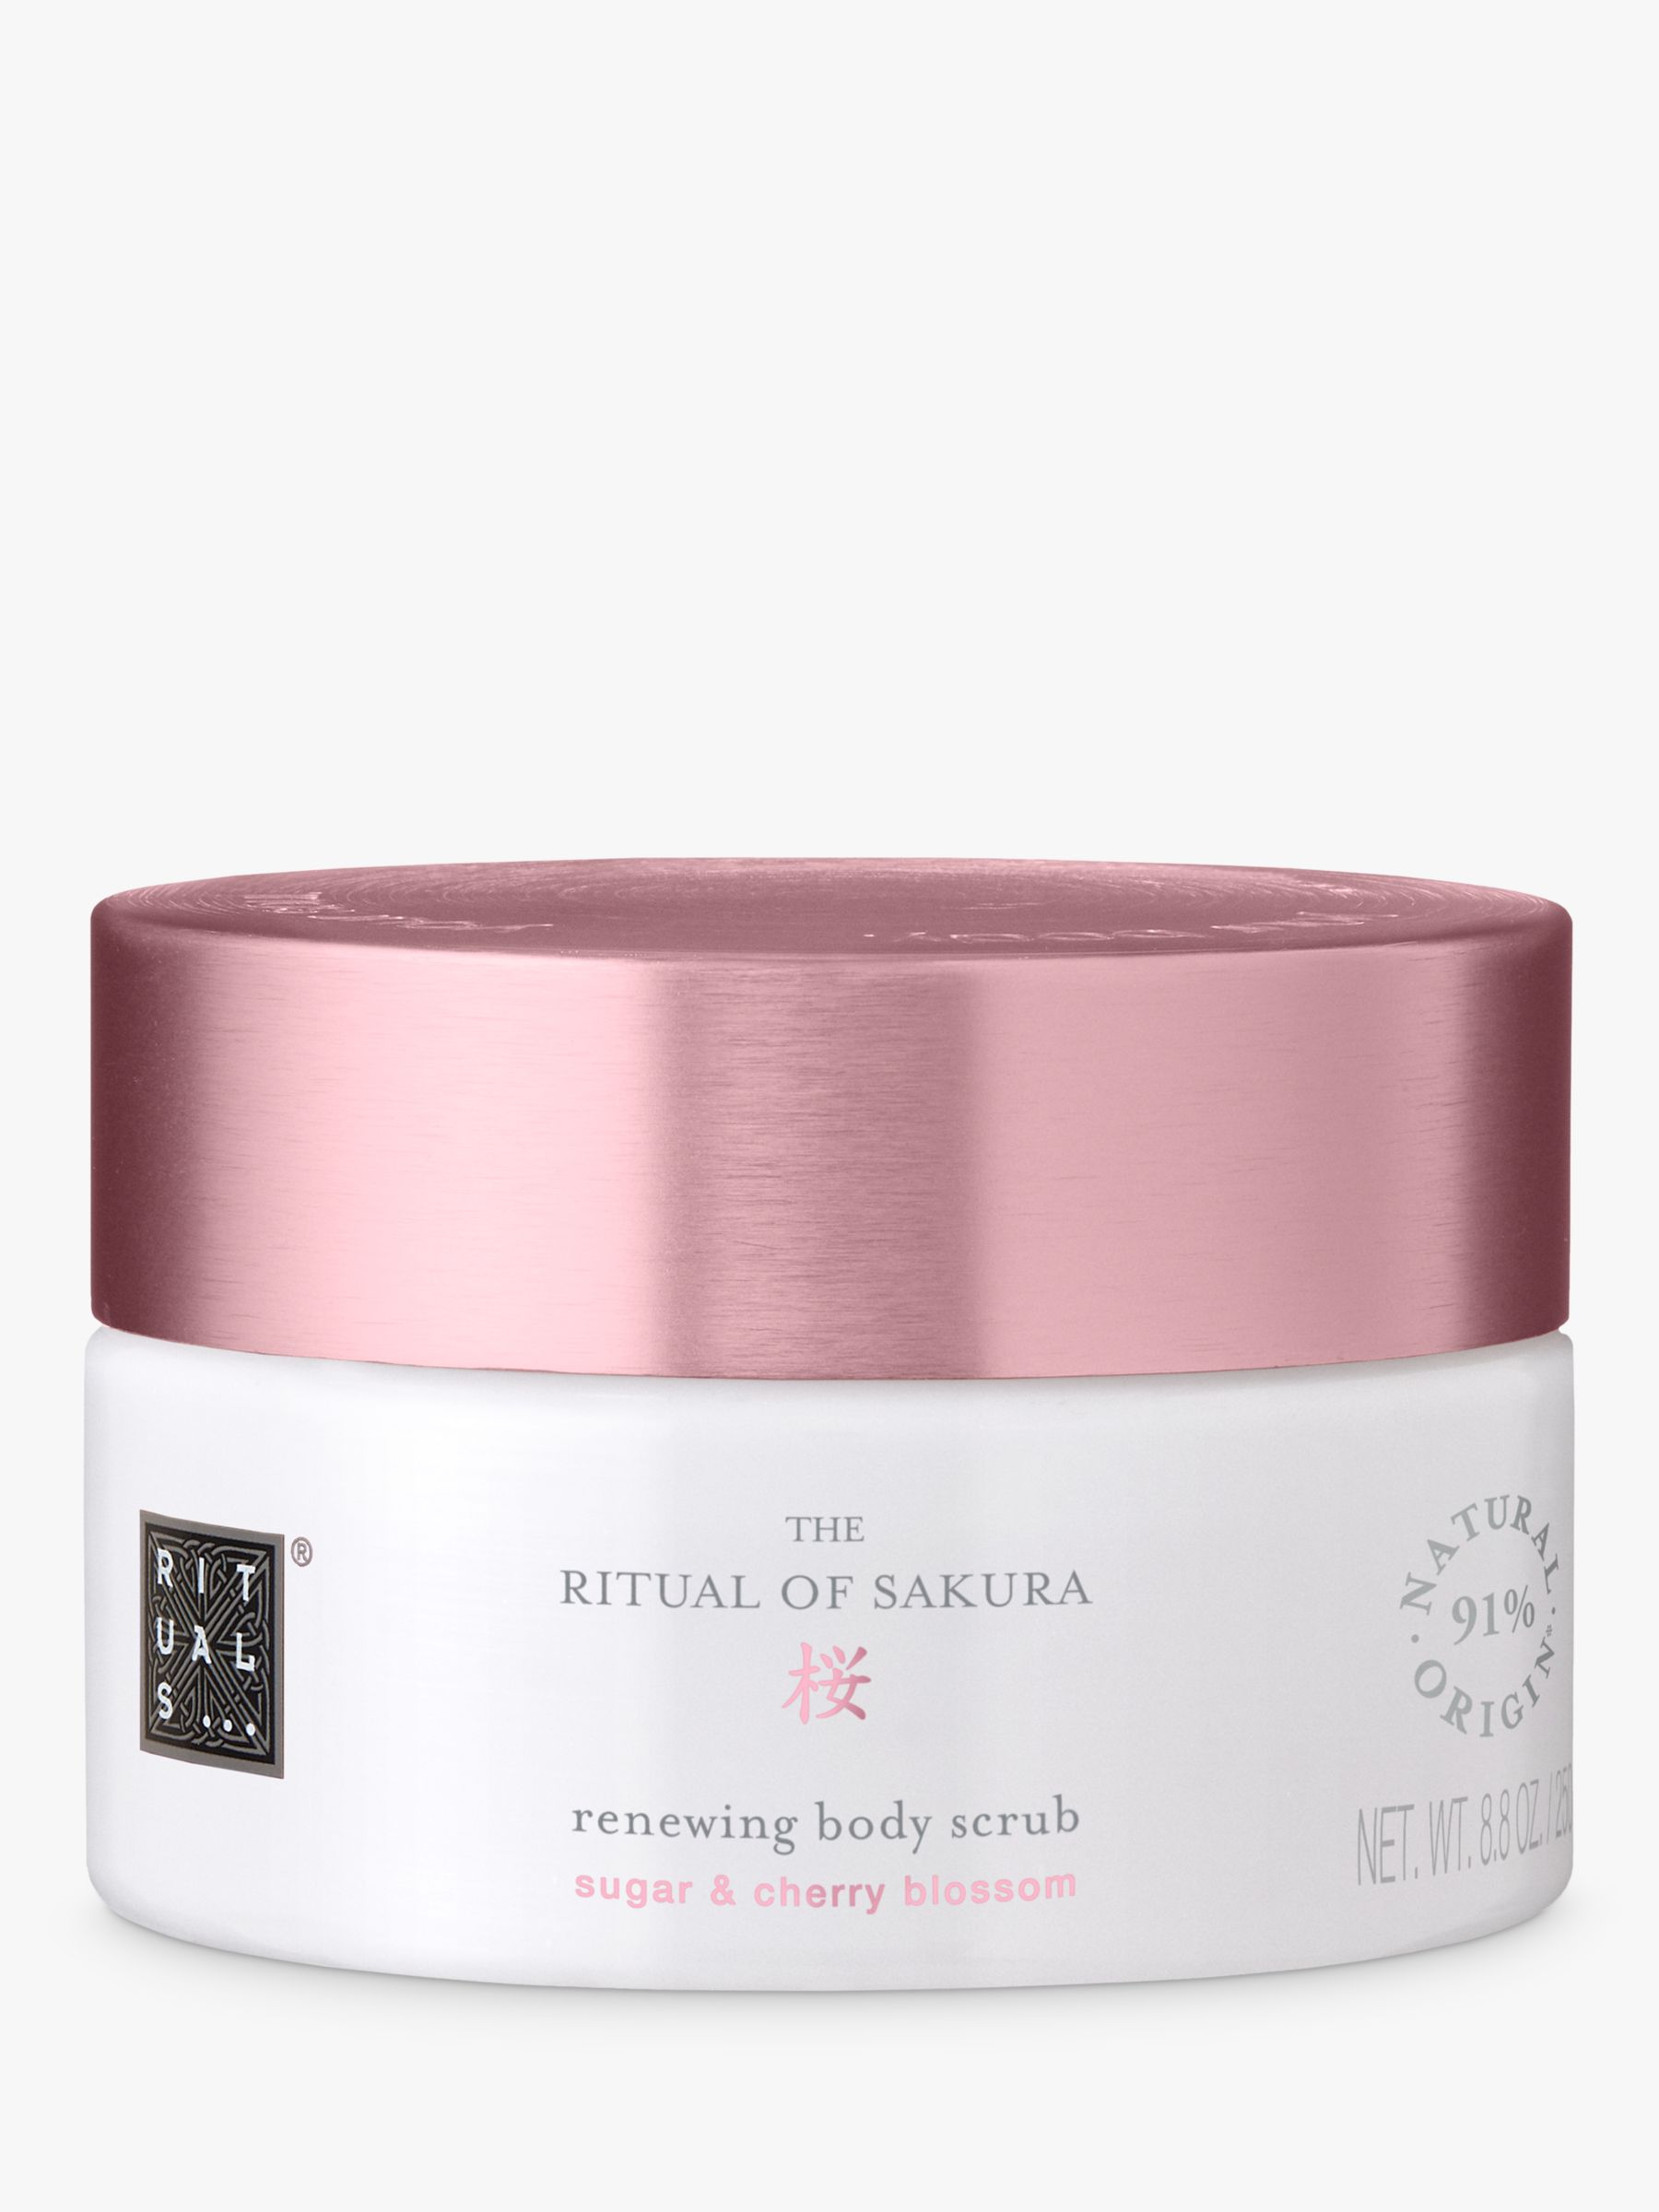 Rituals The Ritual of Sakura Renewing Body Scrub, 250g 1